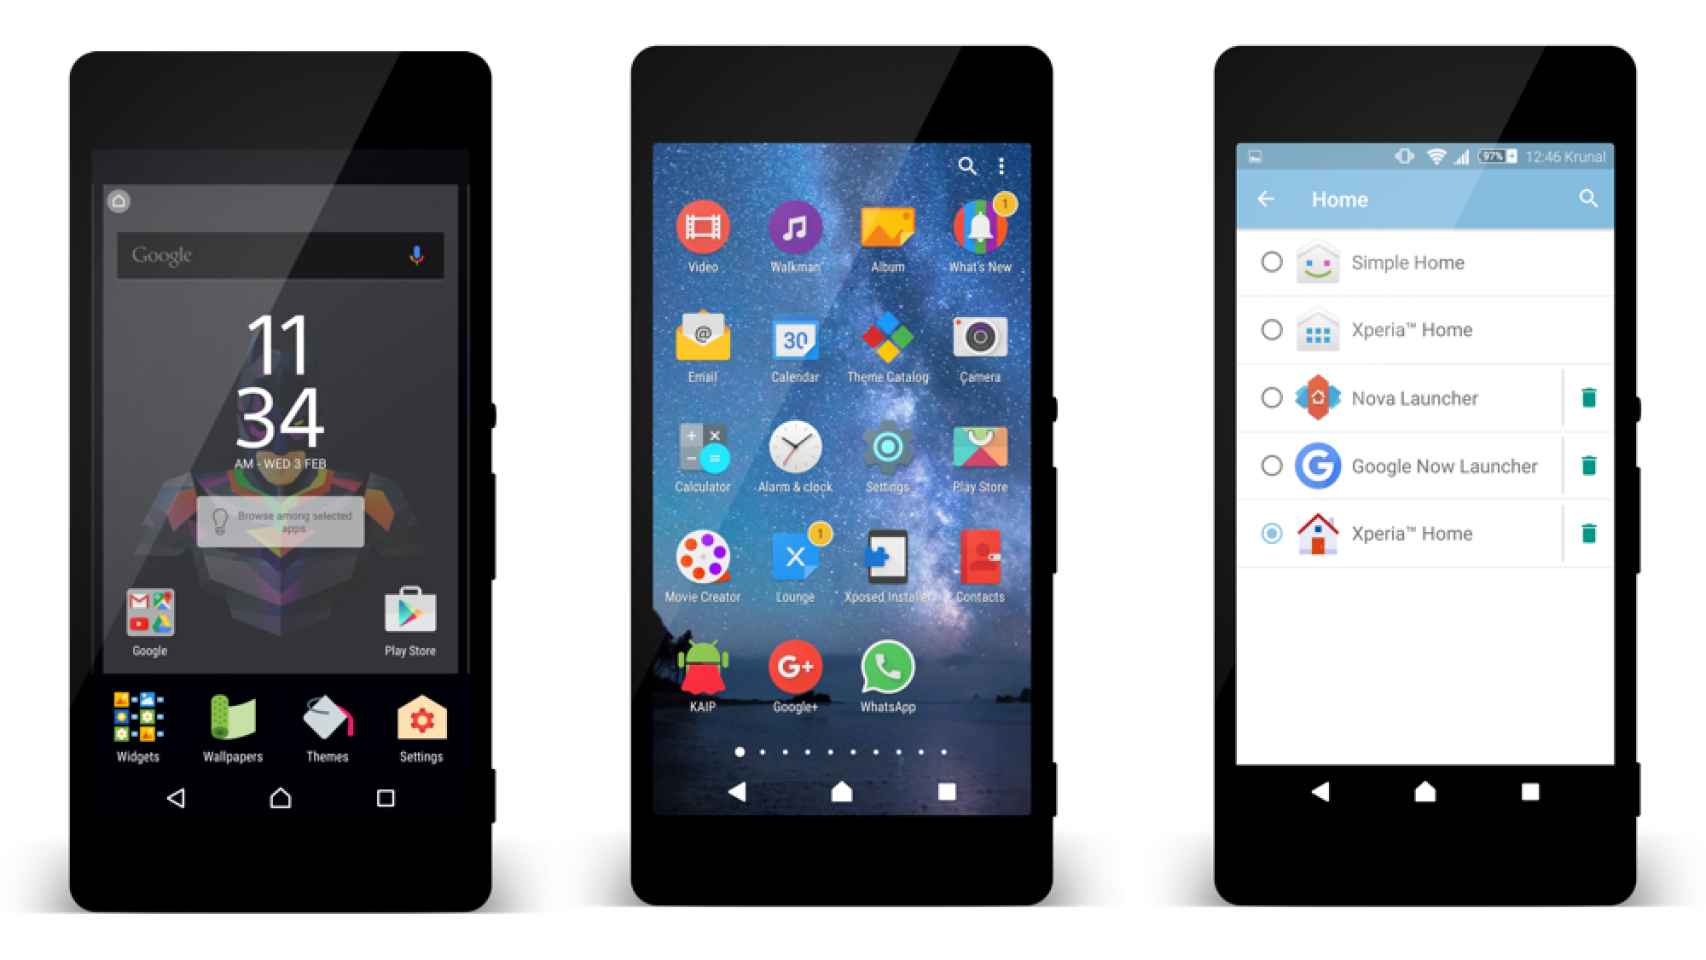 Instala el nuevo launcher de Sony Xperia en cualquier Android 5.0+ [APK]